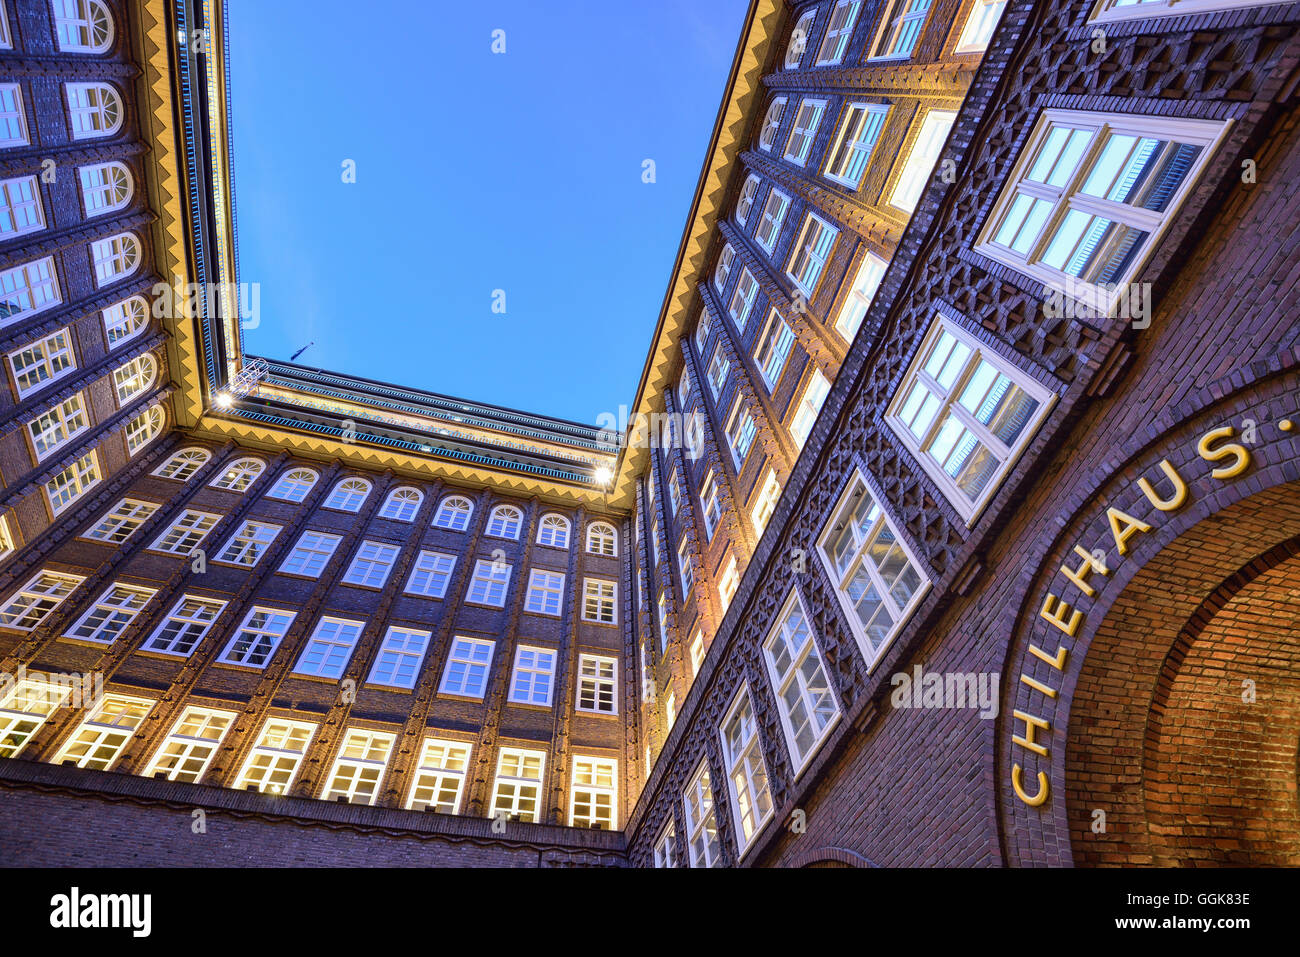 Atrium lumineux de la Chilehaus, la Chilehaus, Kontorhausviertel, Hambourg, Allemagne Banque D'Images